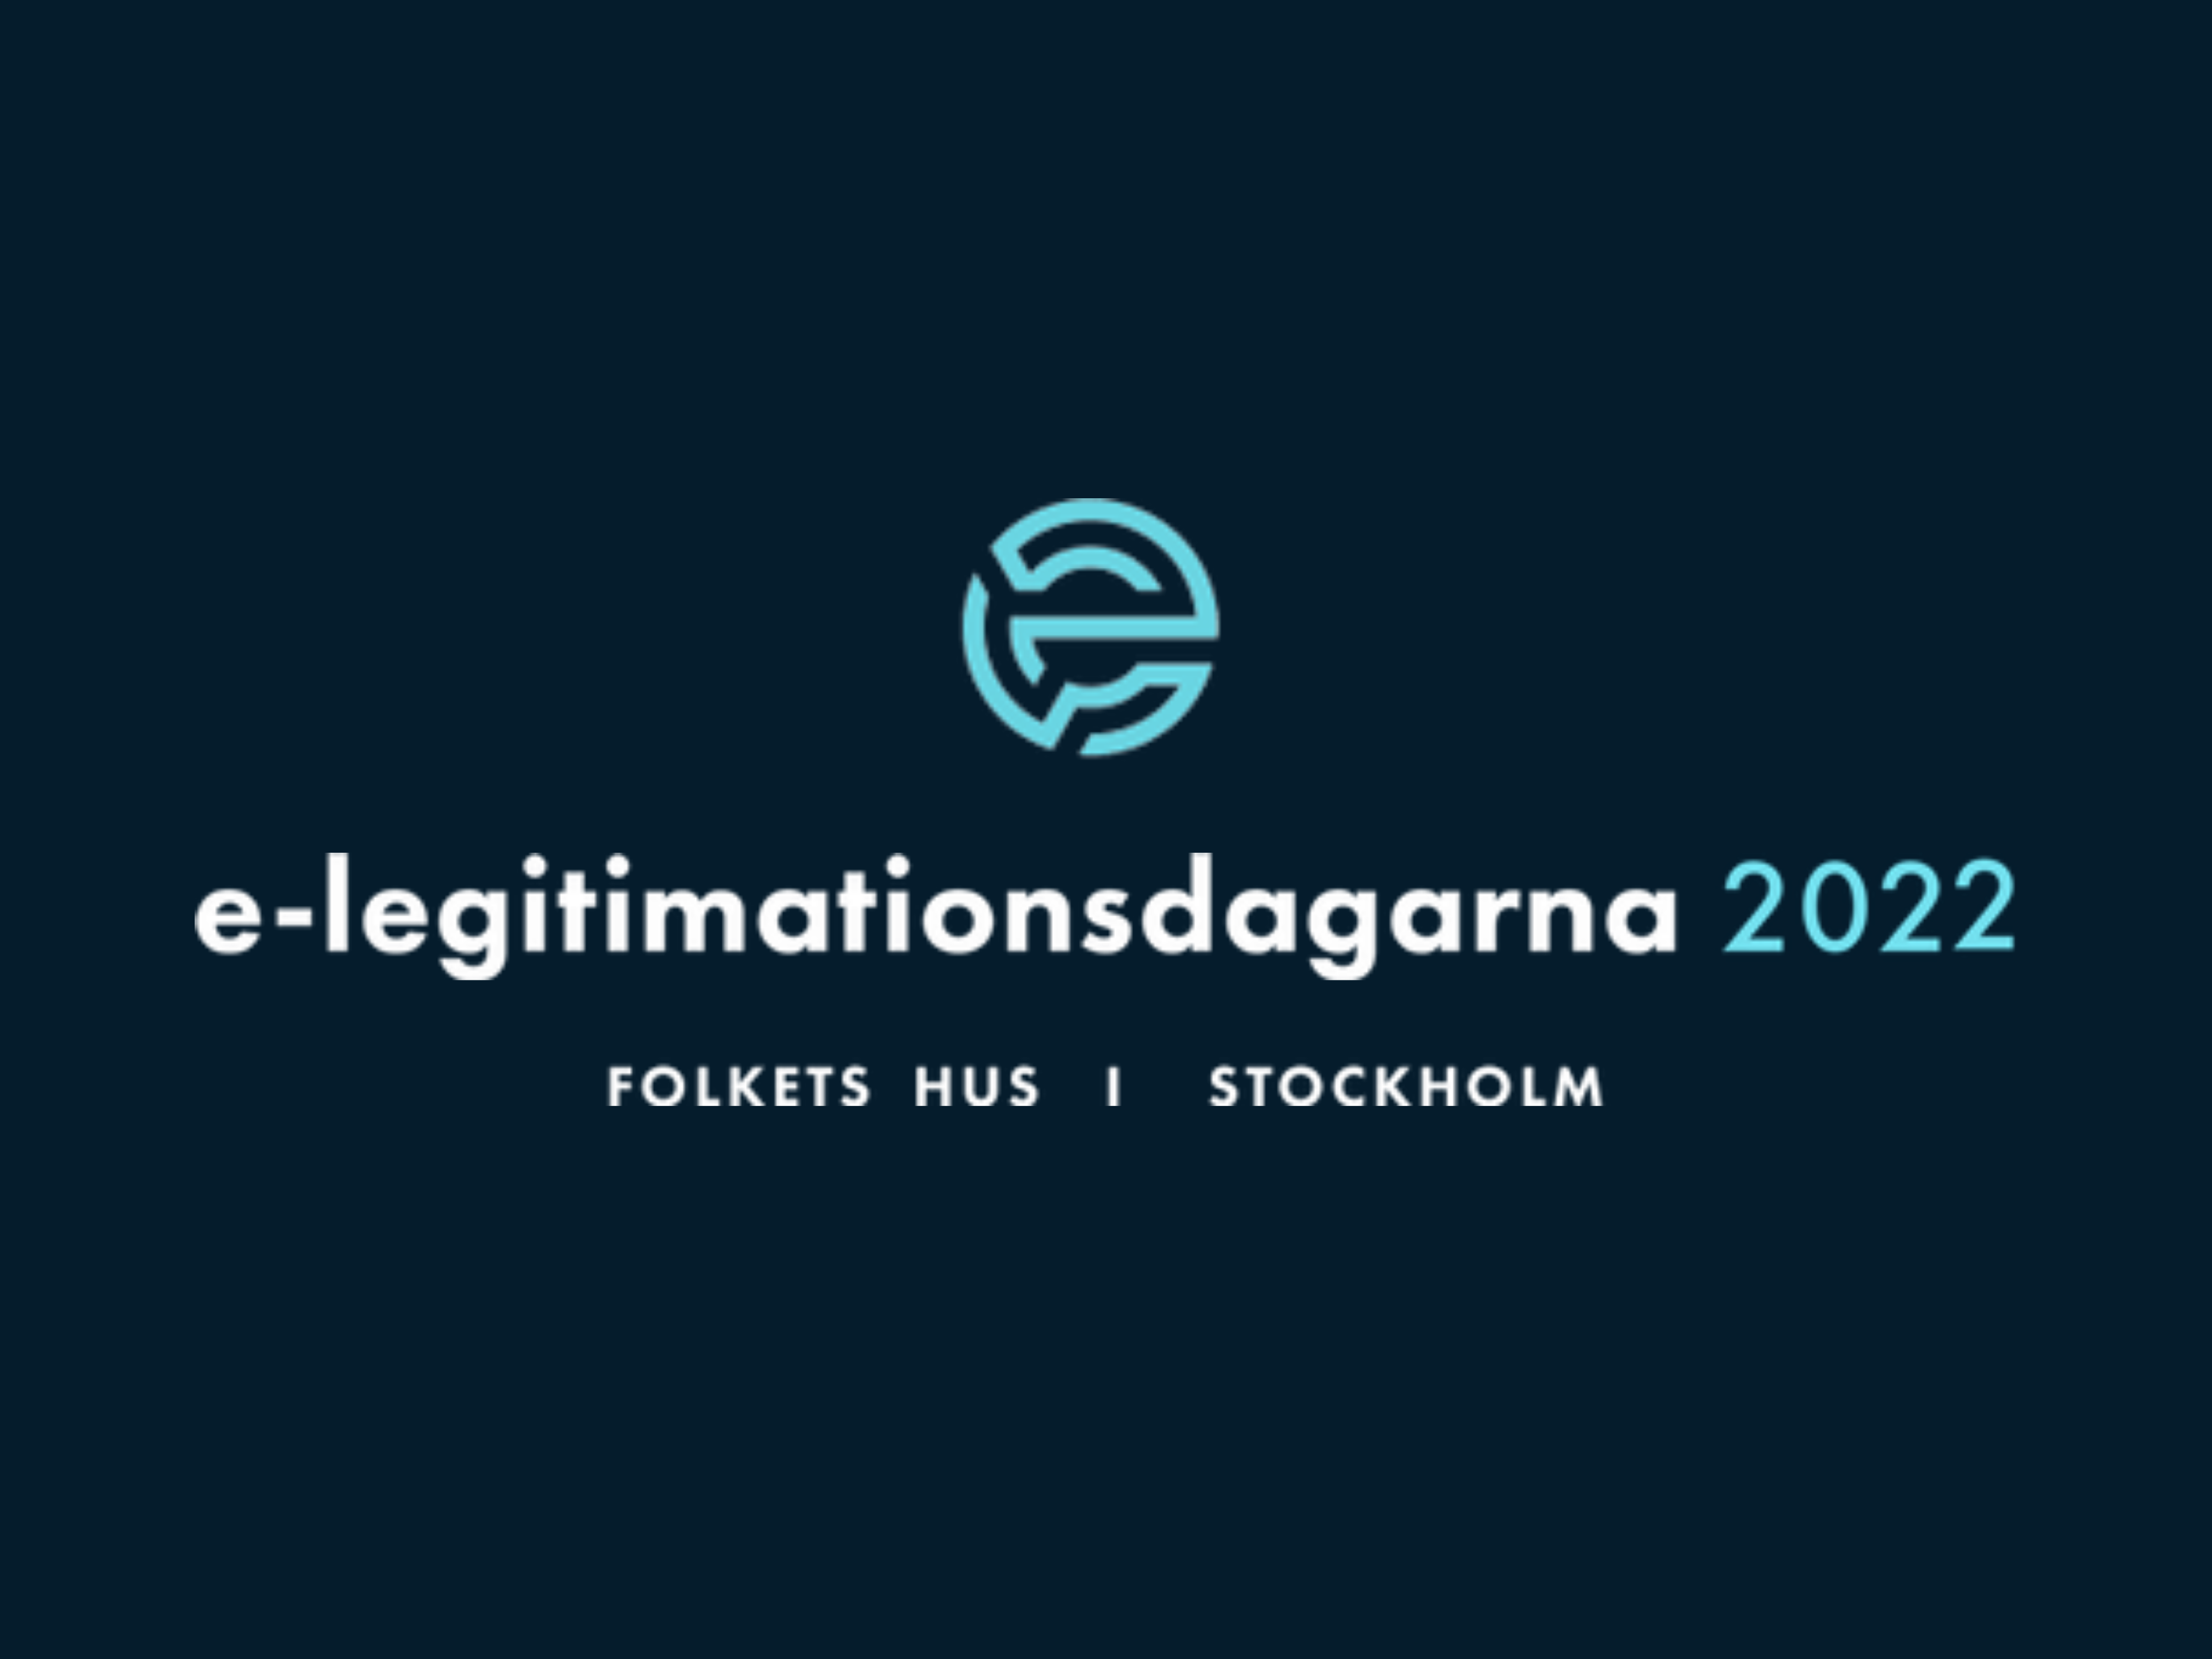 E-legitimationsdagarna – Mötesplatsen för Sveriges digitalisering